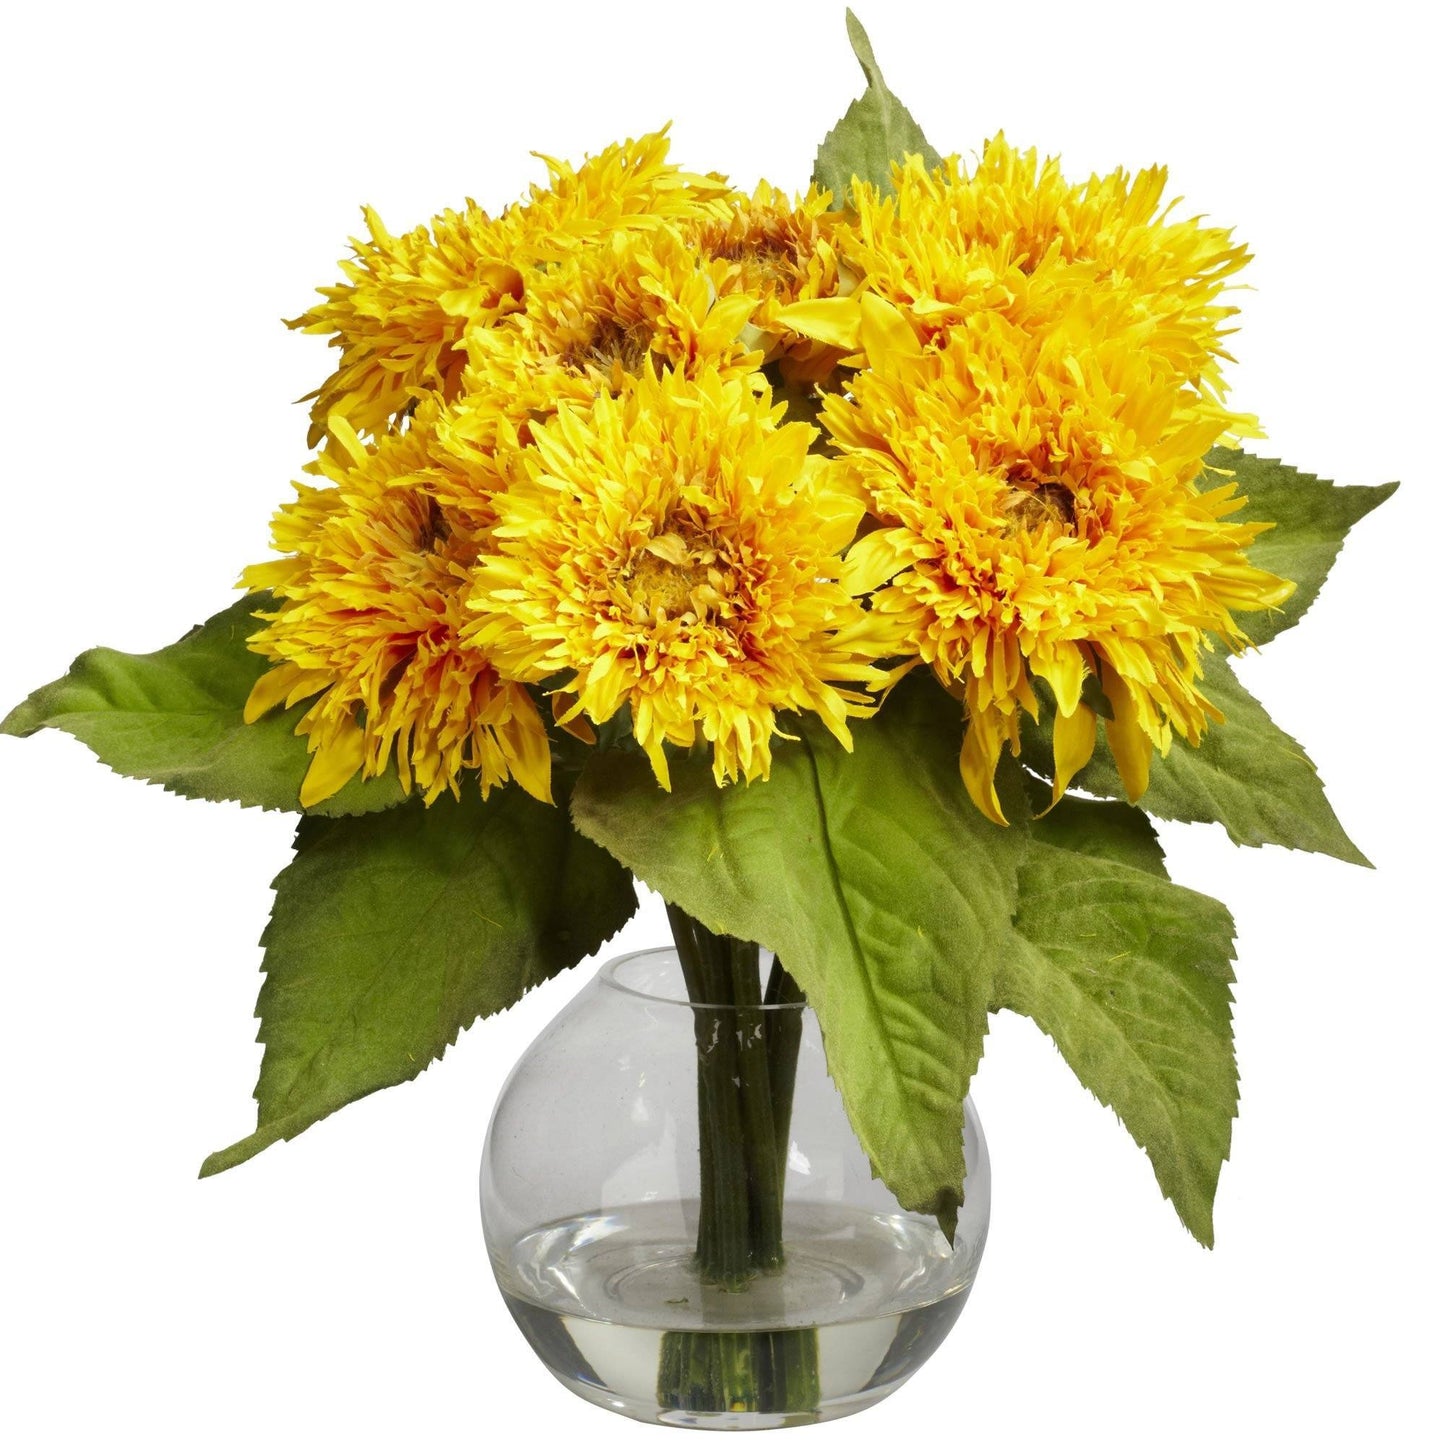 Golden Sunflower Arrangement by Nearly Natural